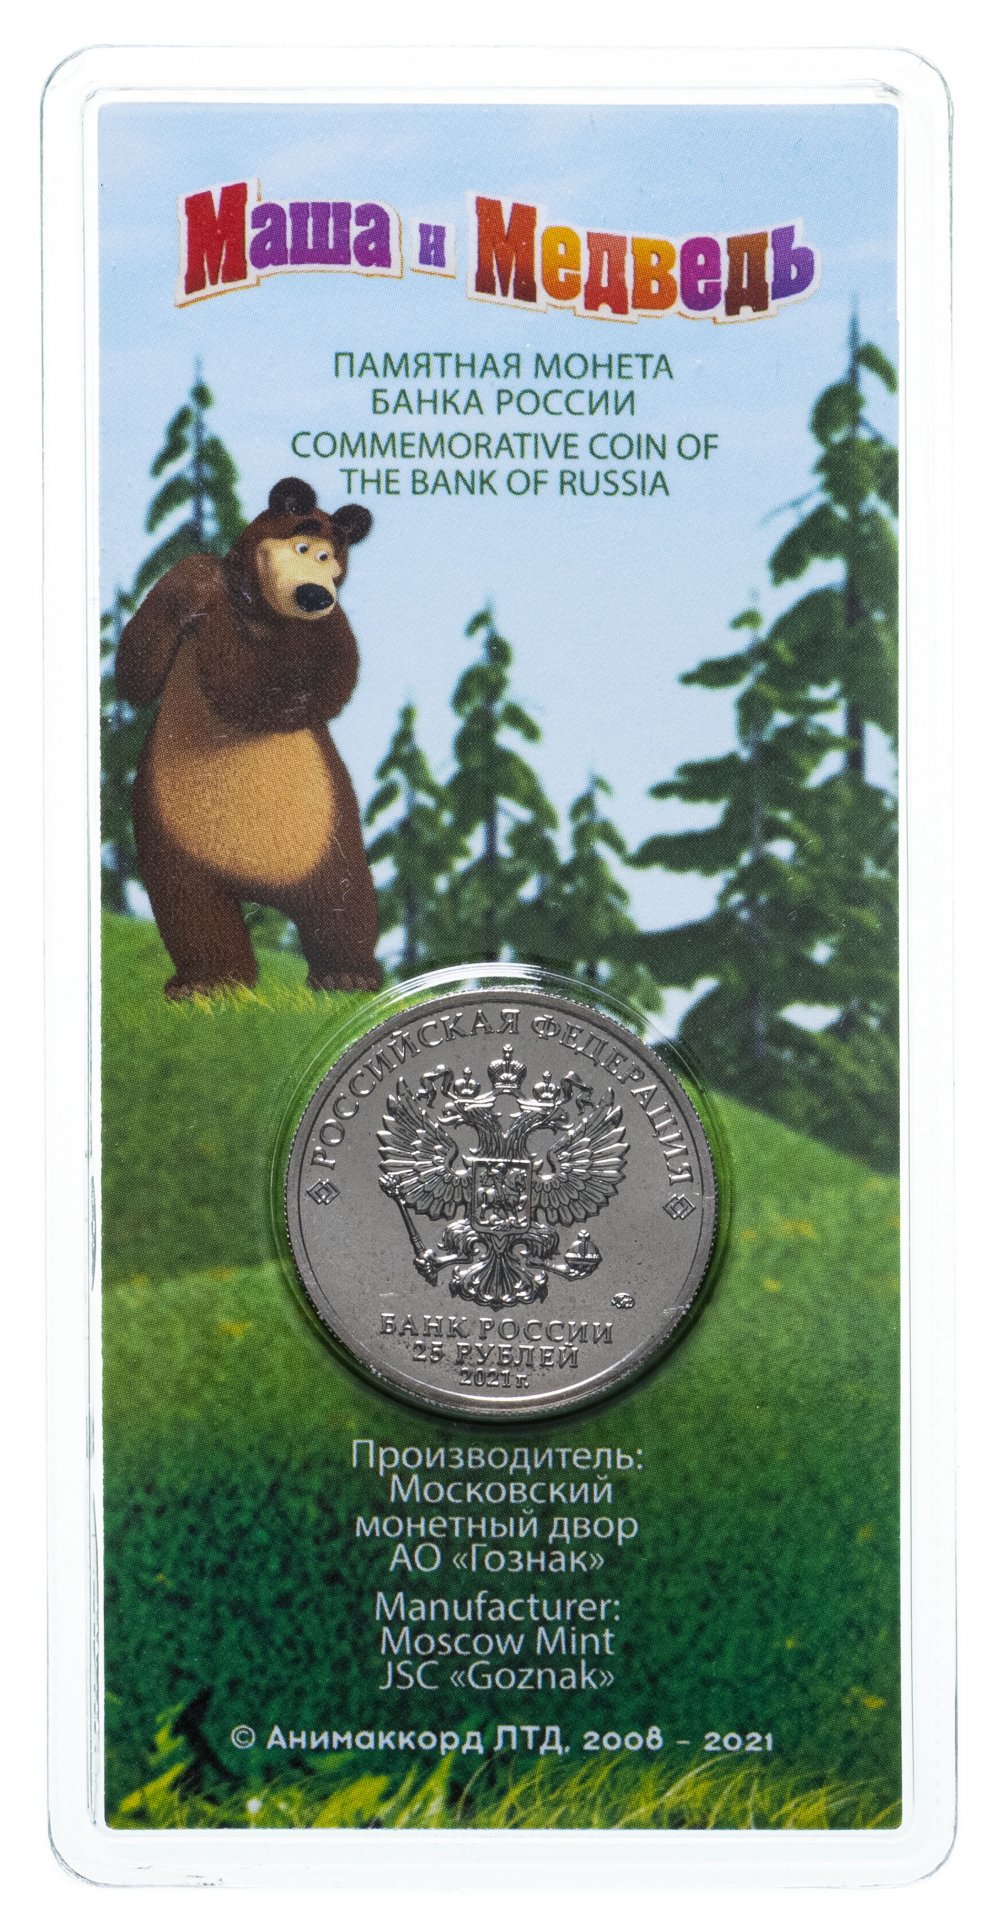 Зеленый медведь обмен валюты обмен криптовалюты на наличные в санкт петербурге